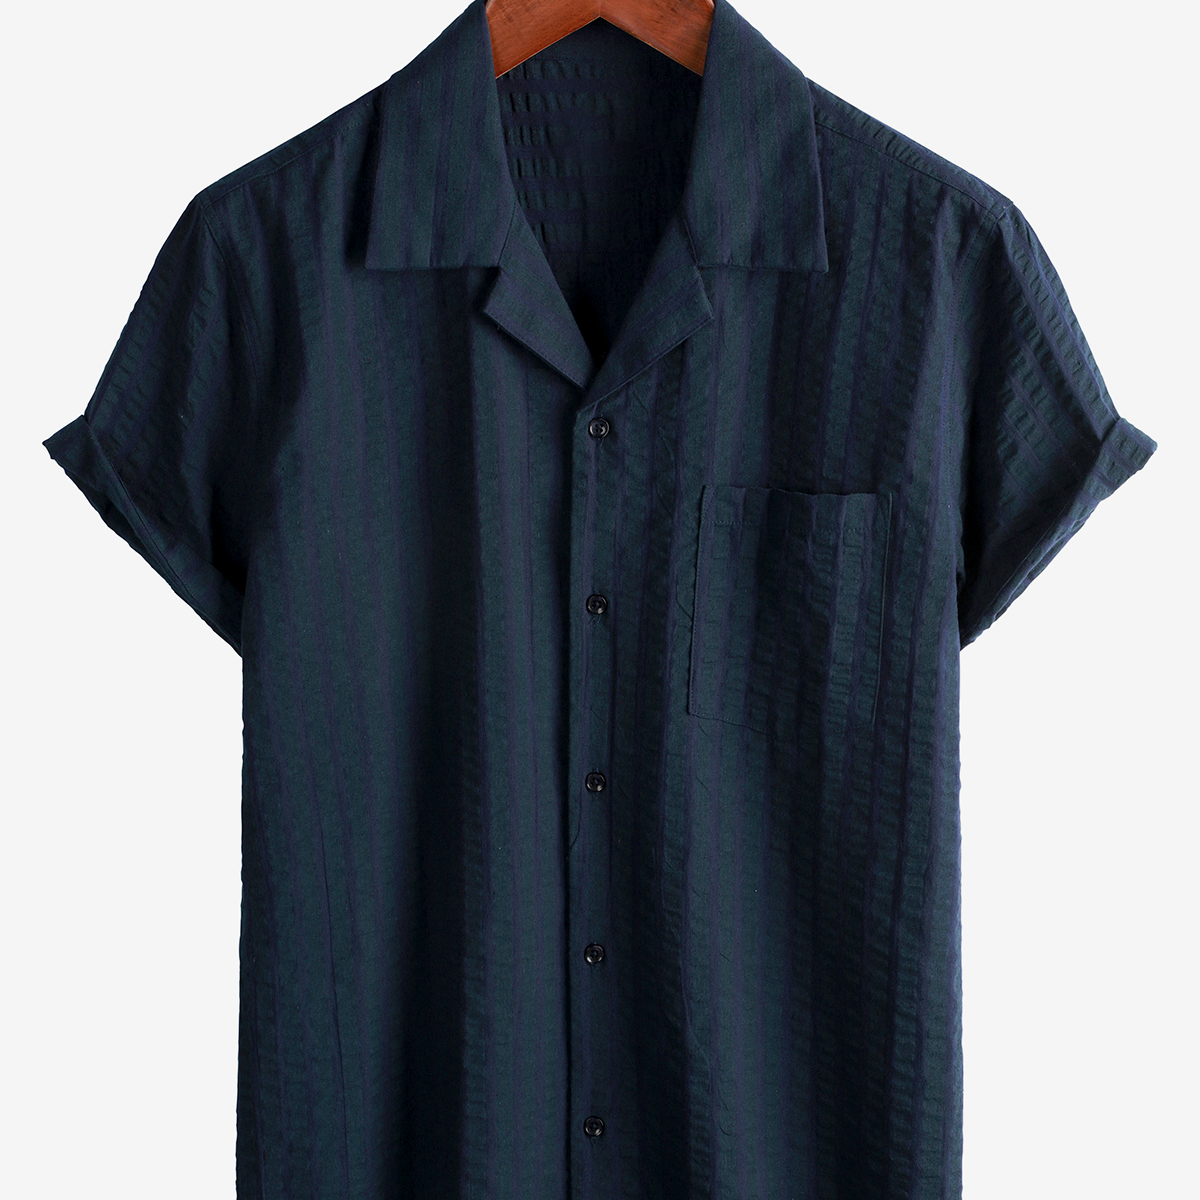 Men's Summer Cuban Collar Short Sleeve Pocket Beach Camp Striped Shirt